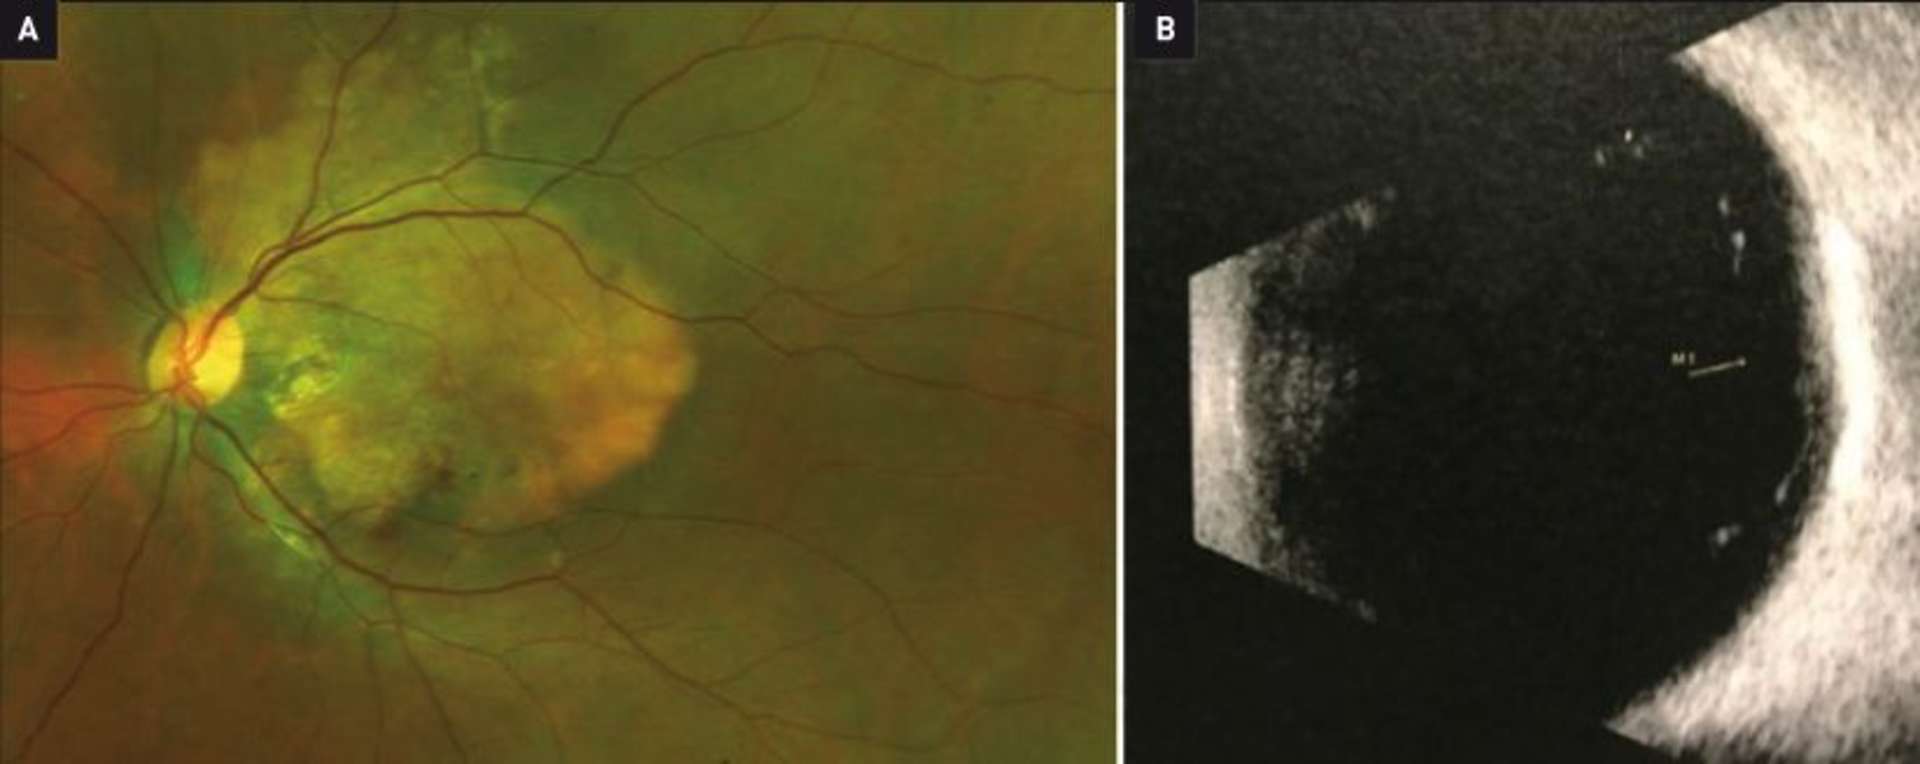 Figure 1. Photographie du fond de l’œil montrant l’ostéome choroïdien au pôle postérieur, associé à des microhémorragies rétiniennes inférieures (A). Aspect de « pseudo nerf optique » de l’ostéome à l’échographie B (B).
